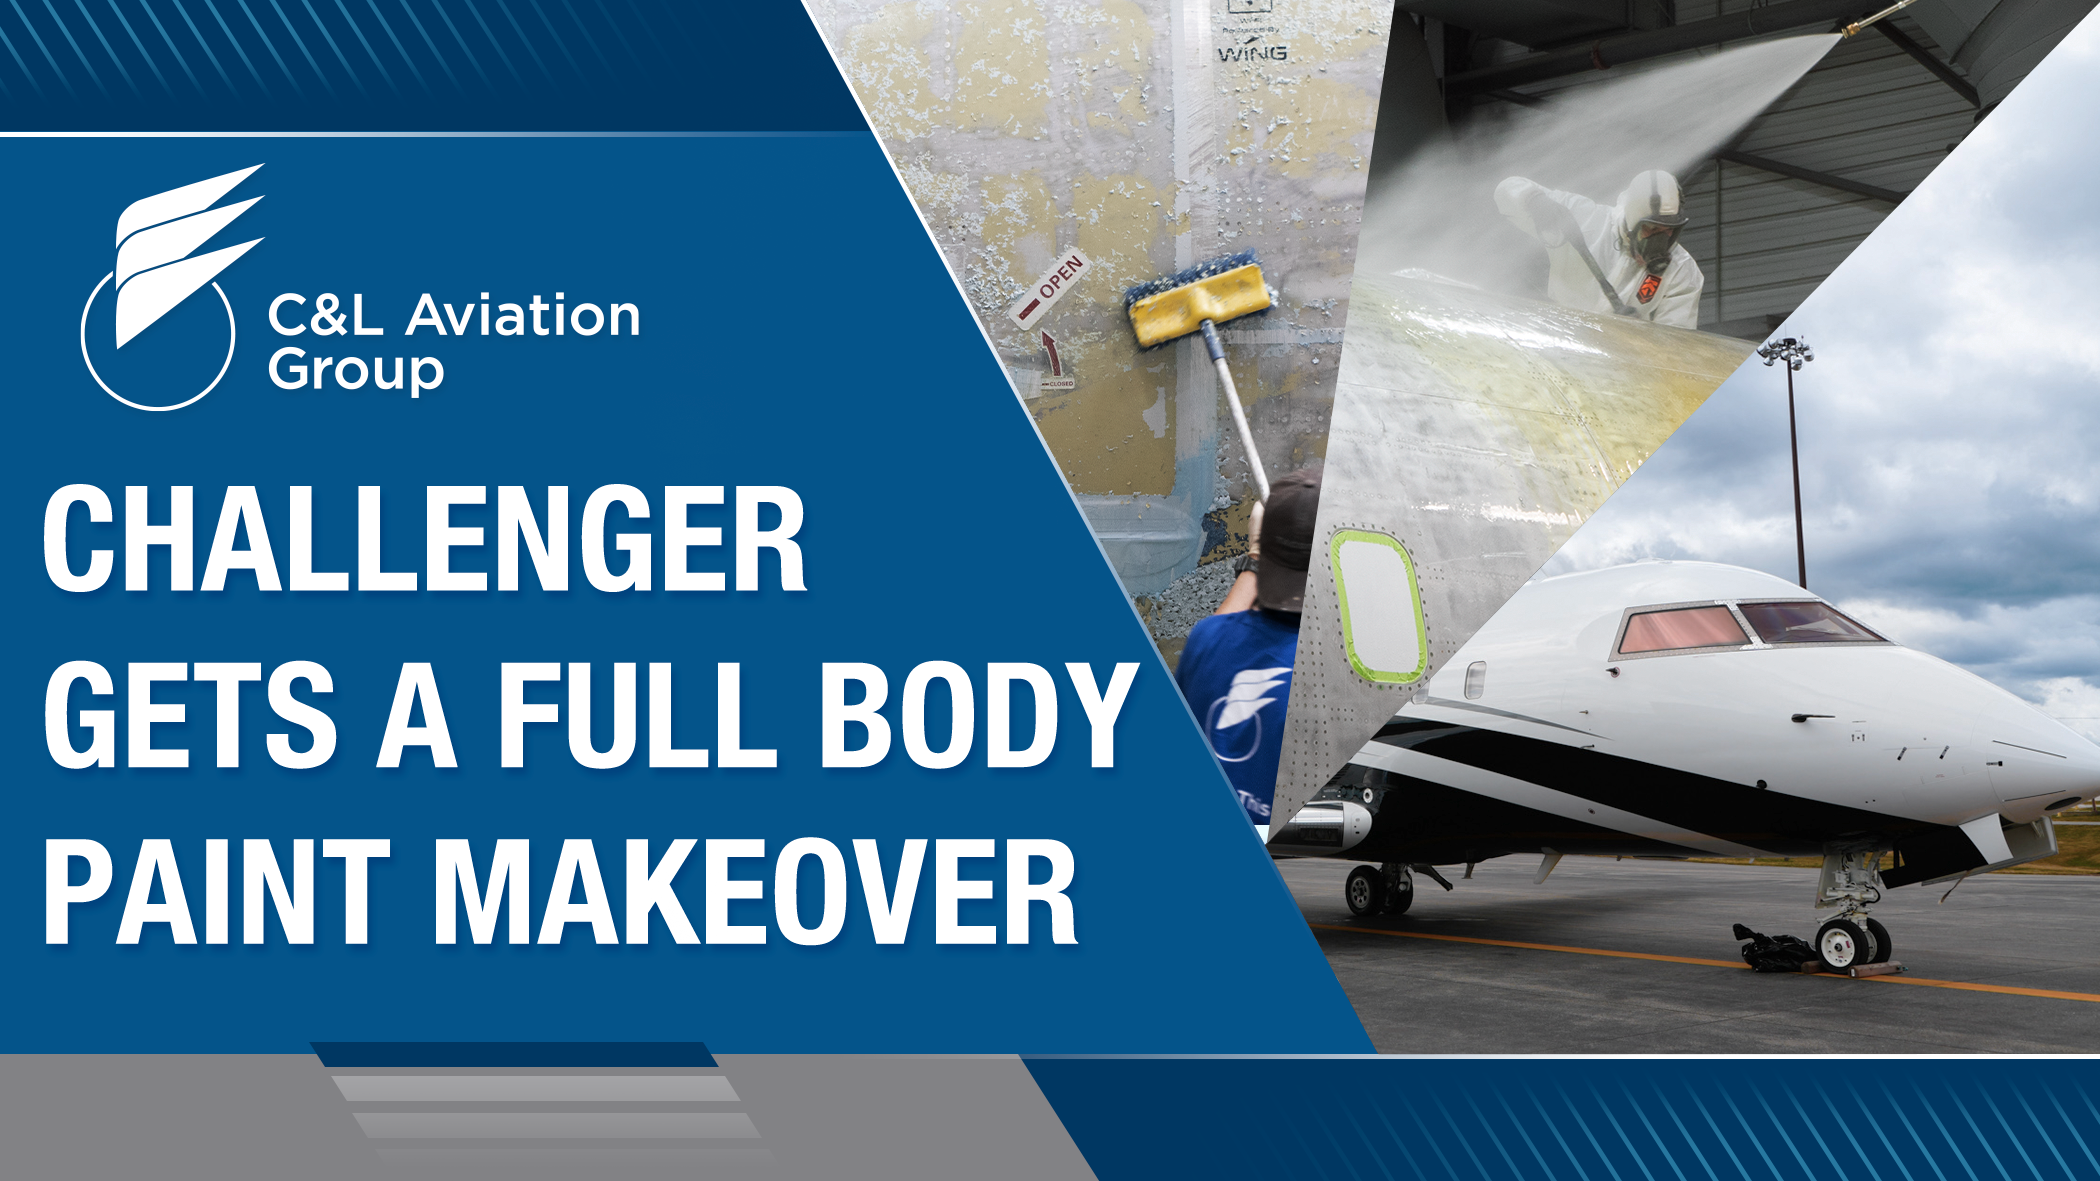 Challenger 604 Aircraft Paint Job